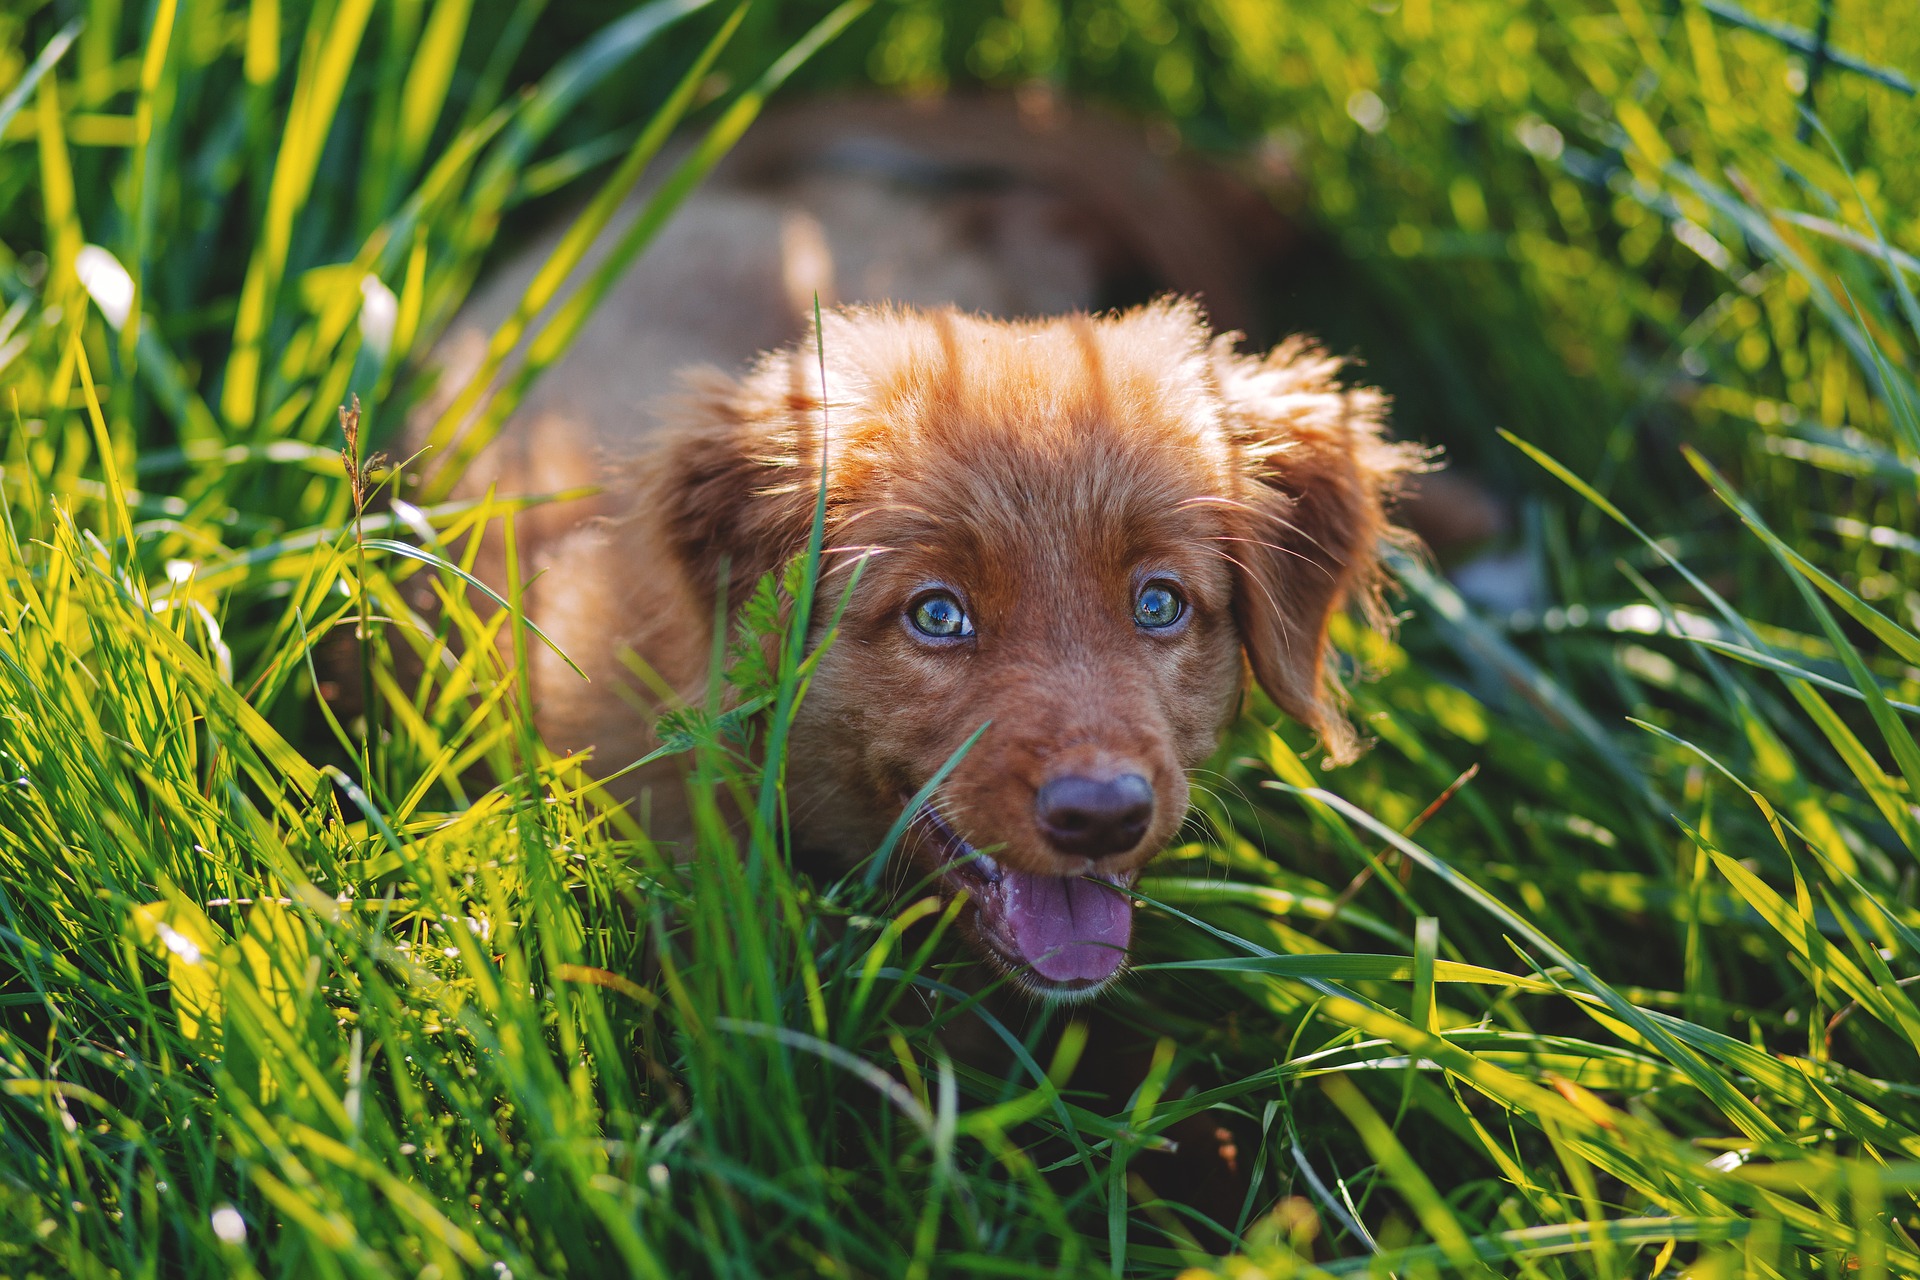 mon-chien-mange-de-l'herbe